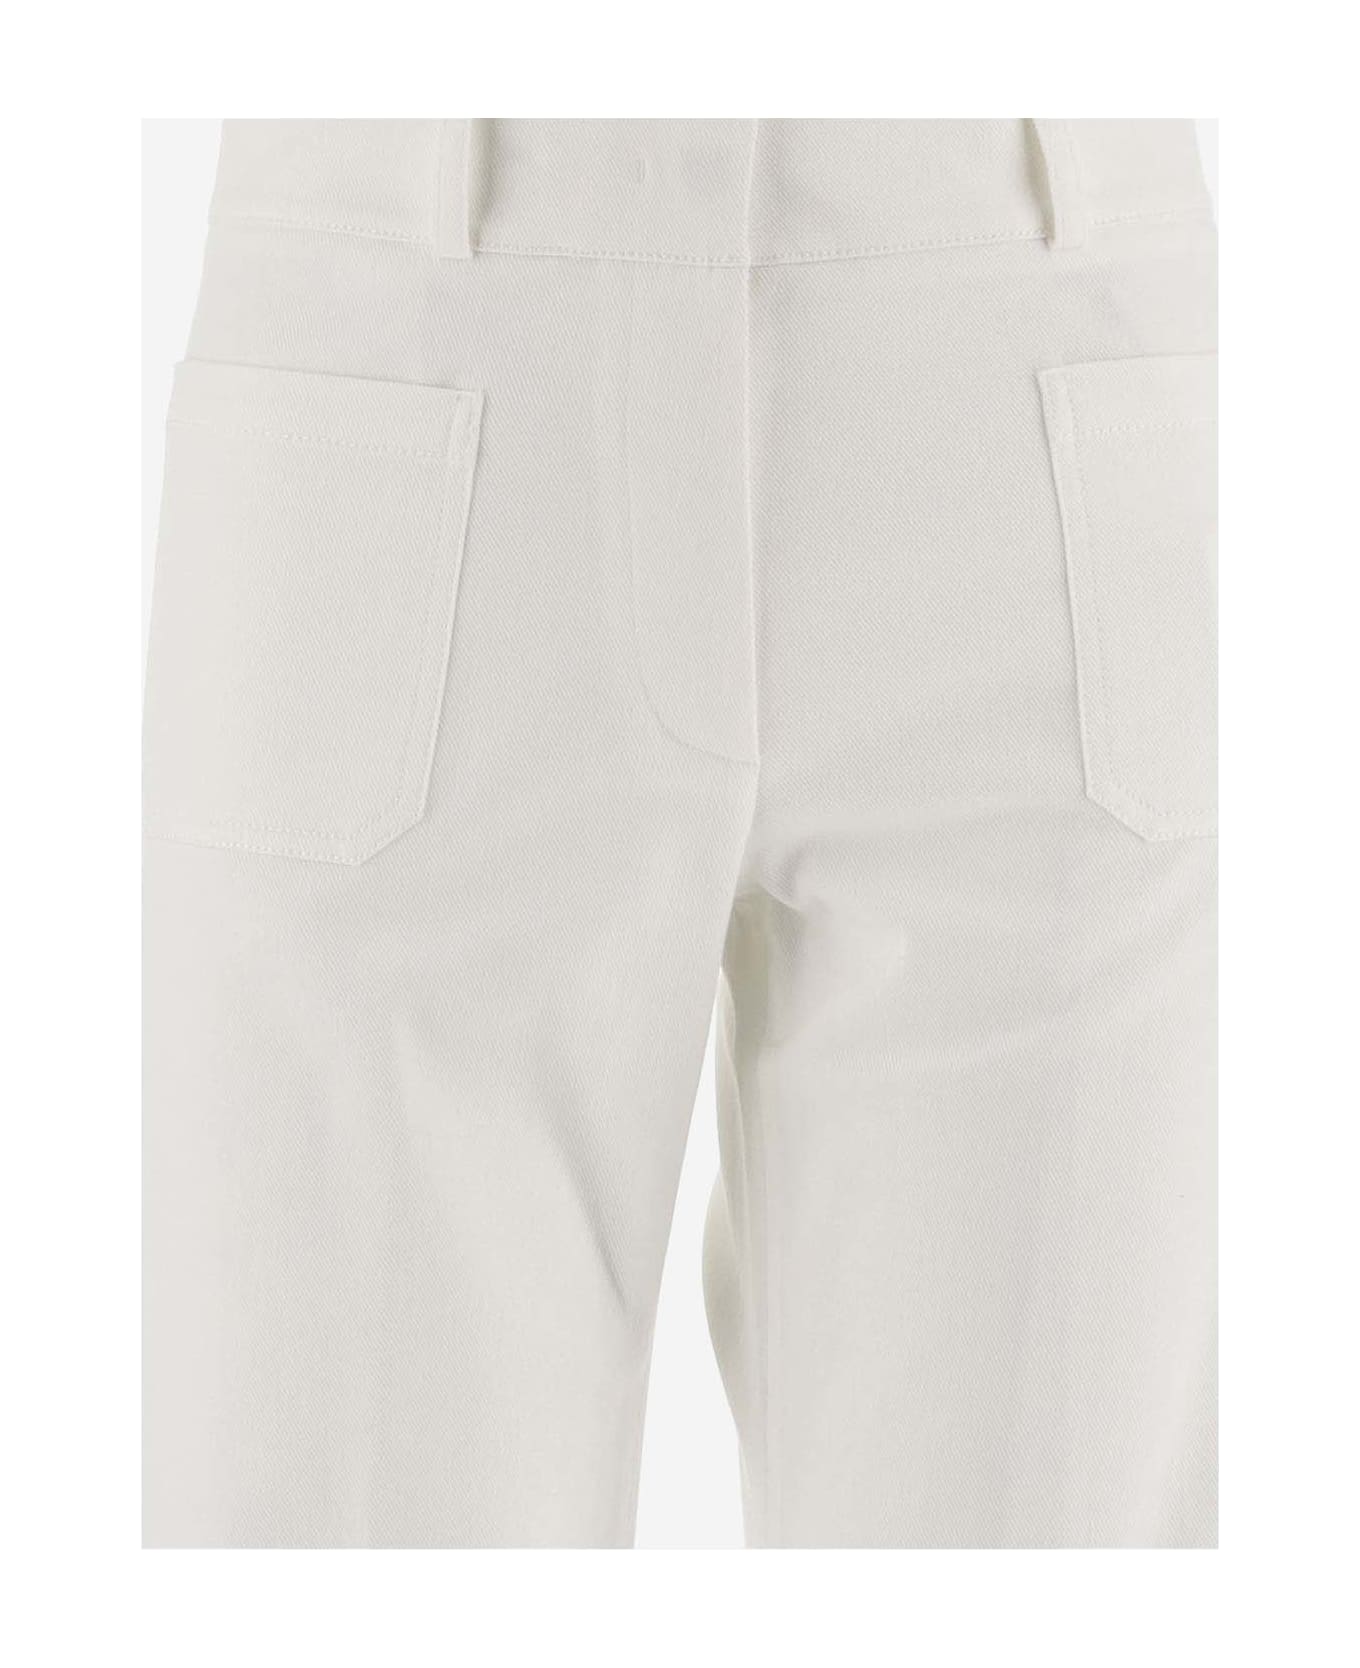 QL2 Stretch Cotton Wide Leg Pants - White ボトムス